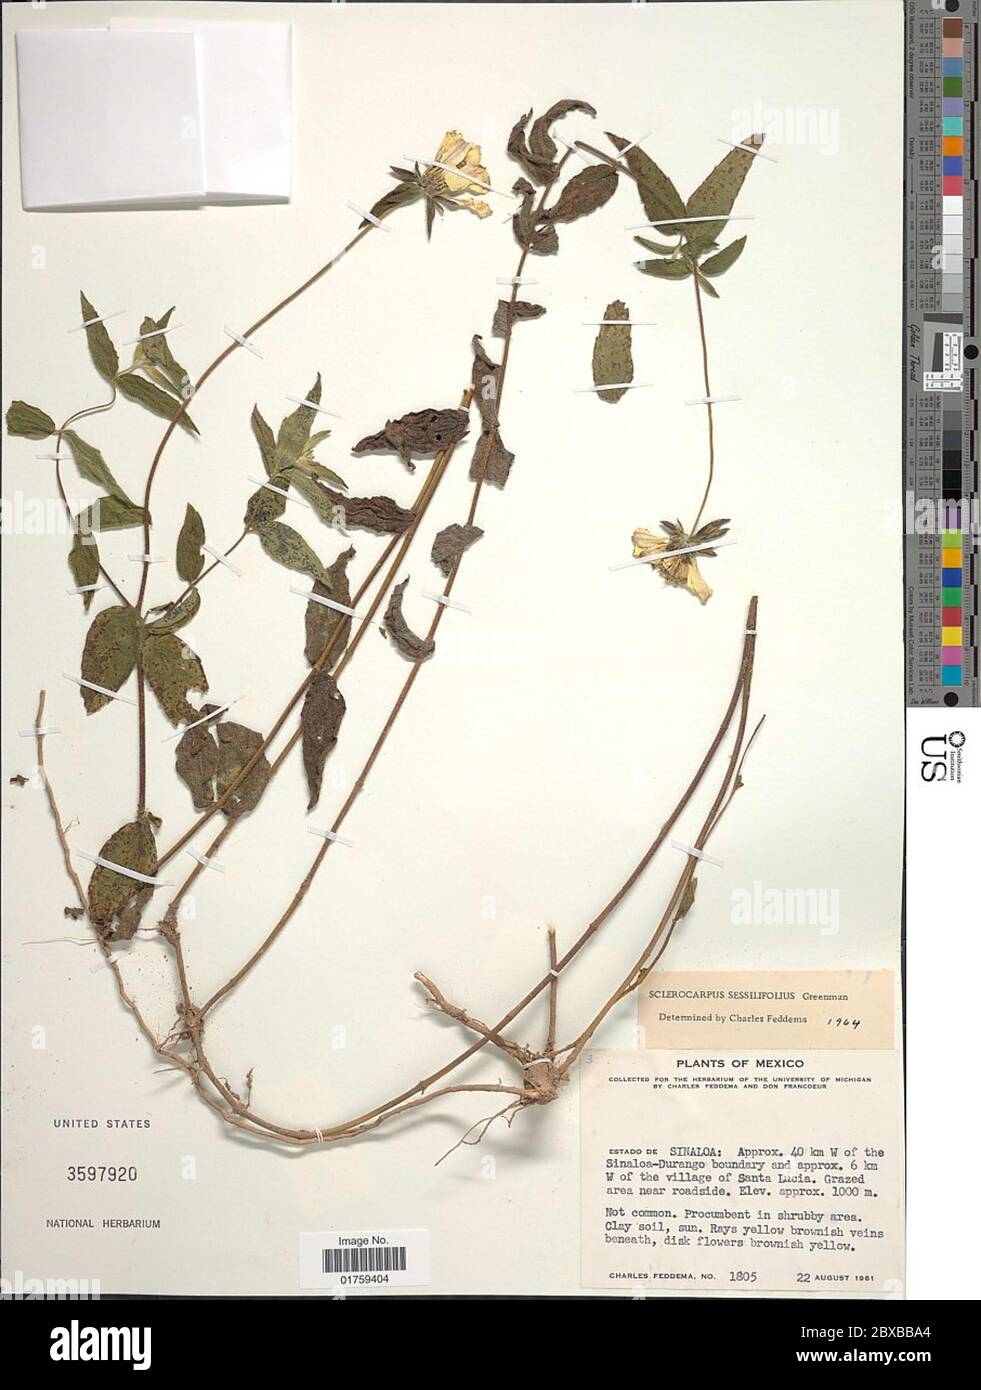 Sclerocarpus sessilifolius Greenm Sclerocarpus sessilifolius Greenm. Stock Photo